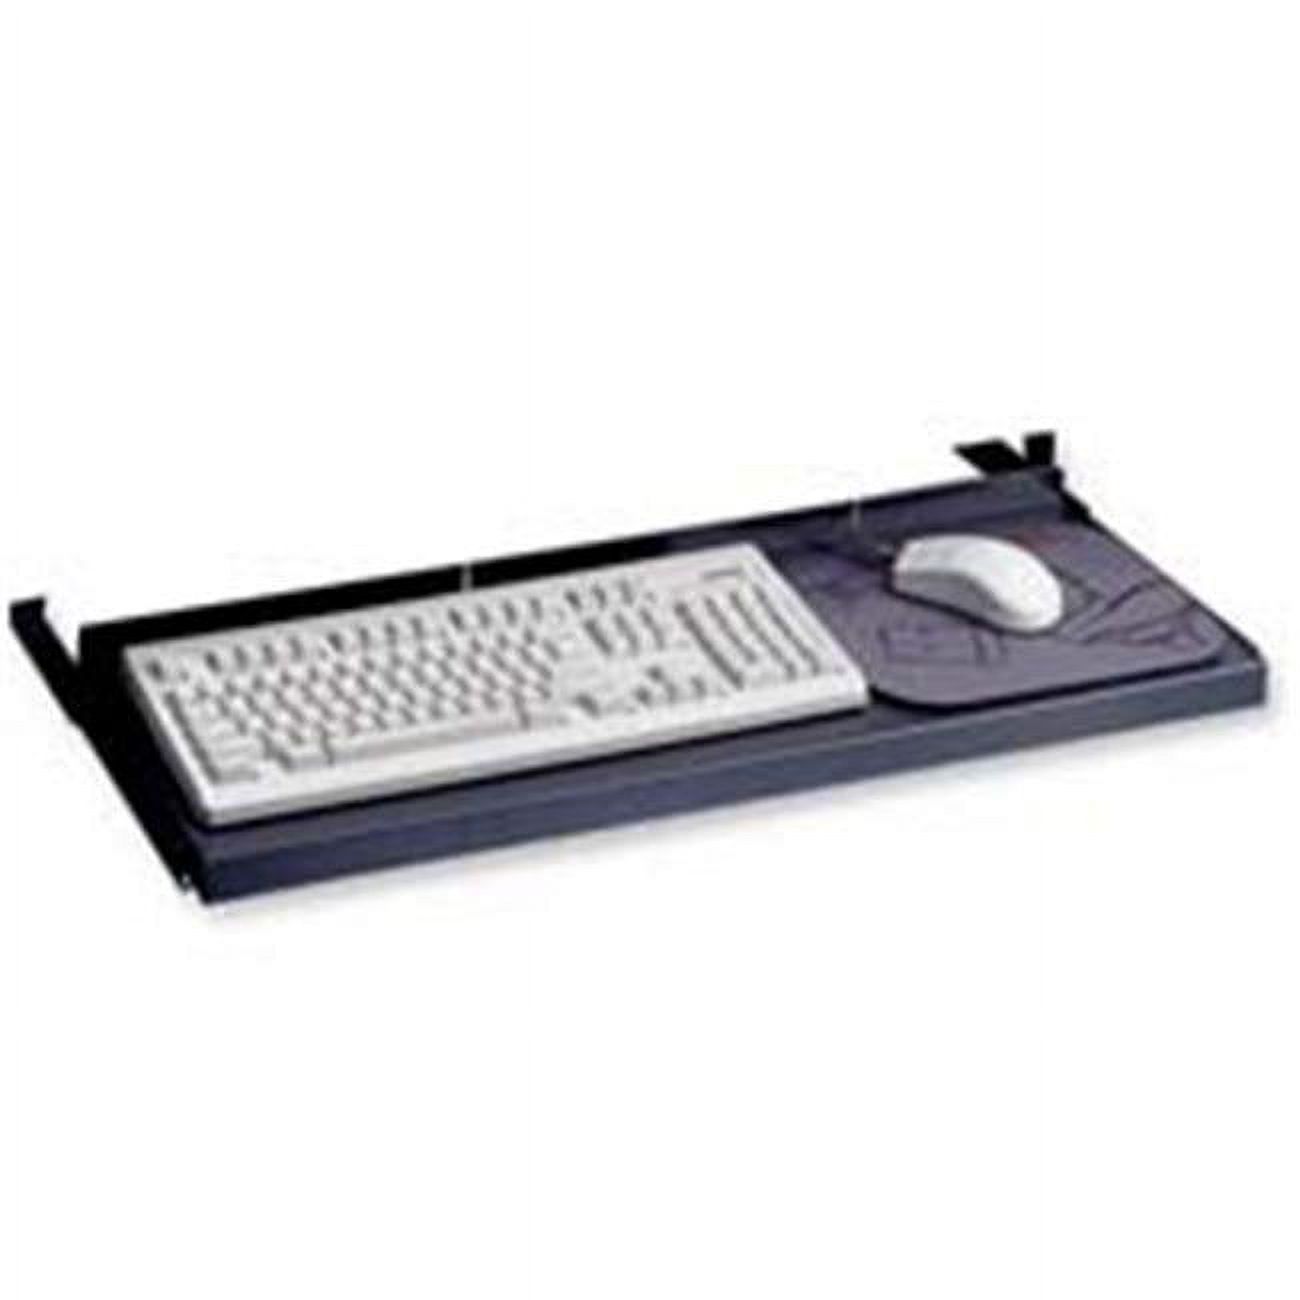 Laminate Keyboard Platform- Non-Articulating- 30in.x10in.- Metal- BK - image 1 of 1